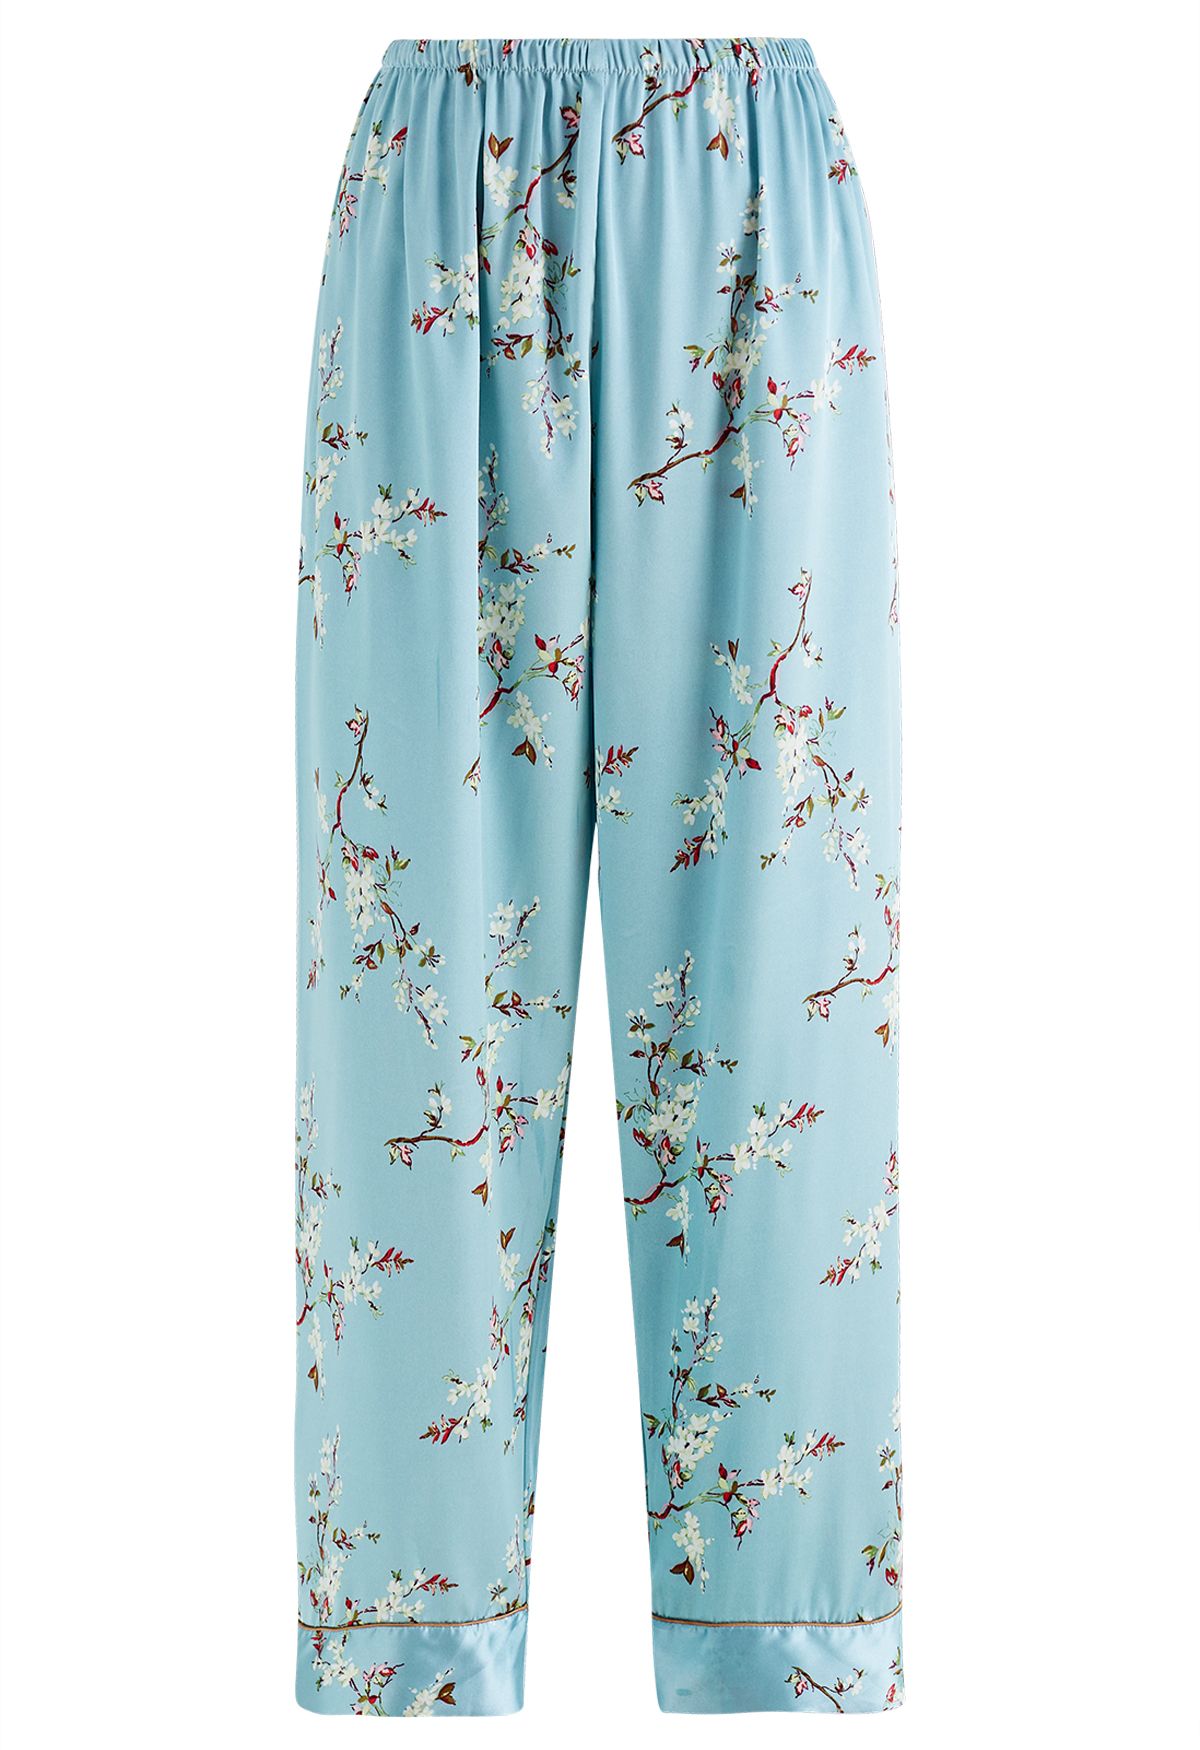 Plum Blossom Four-Piece Pajama Set